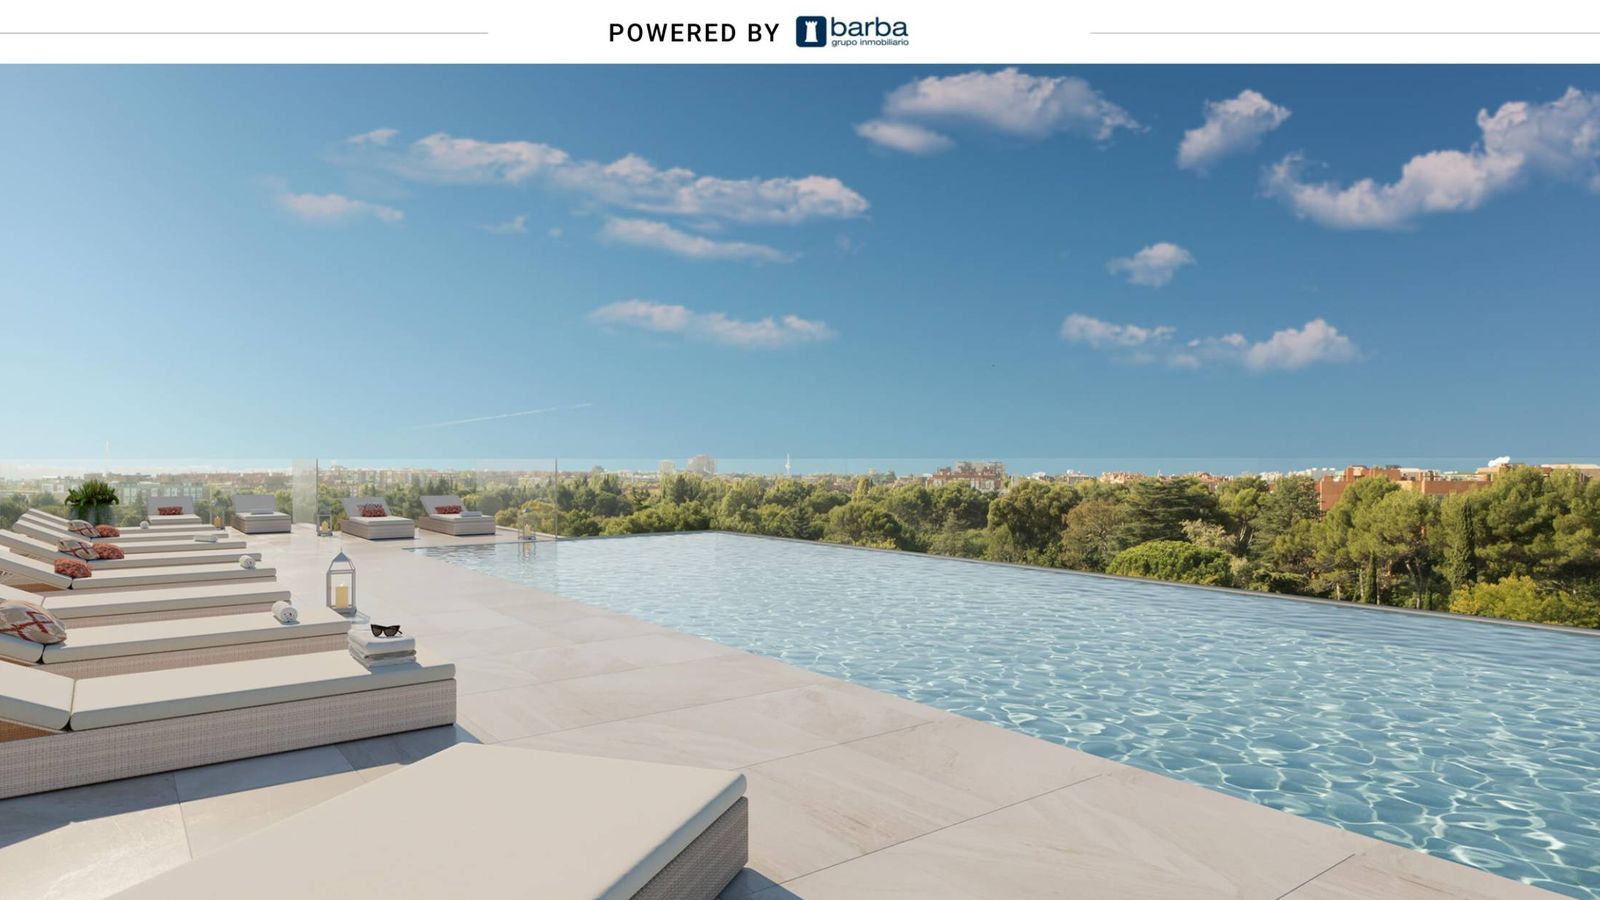 Viviendas en Madrid con terraza, jardín y piscina junto a un parque histórico thumbnail